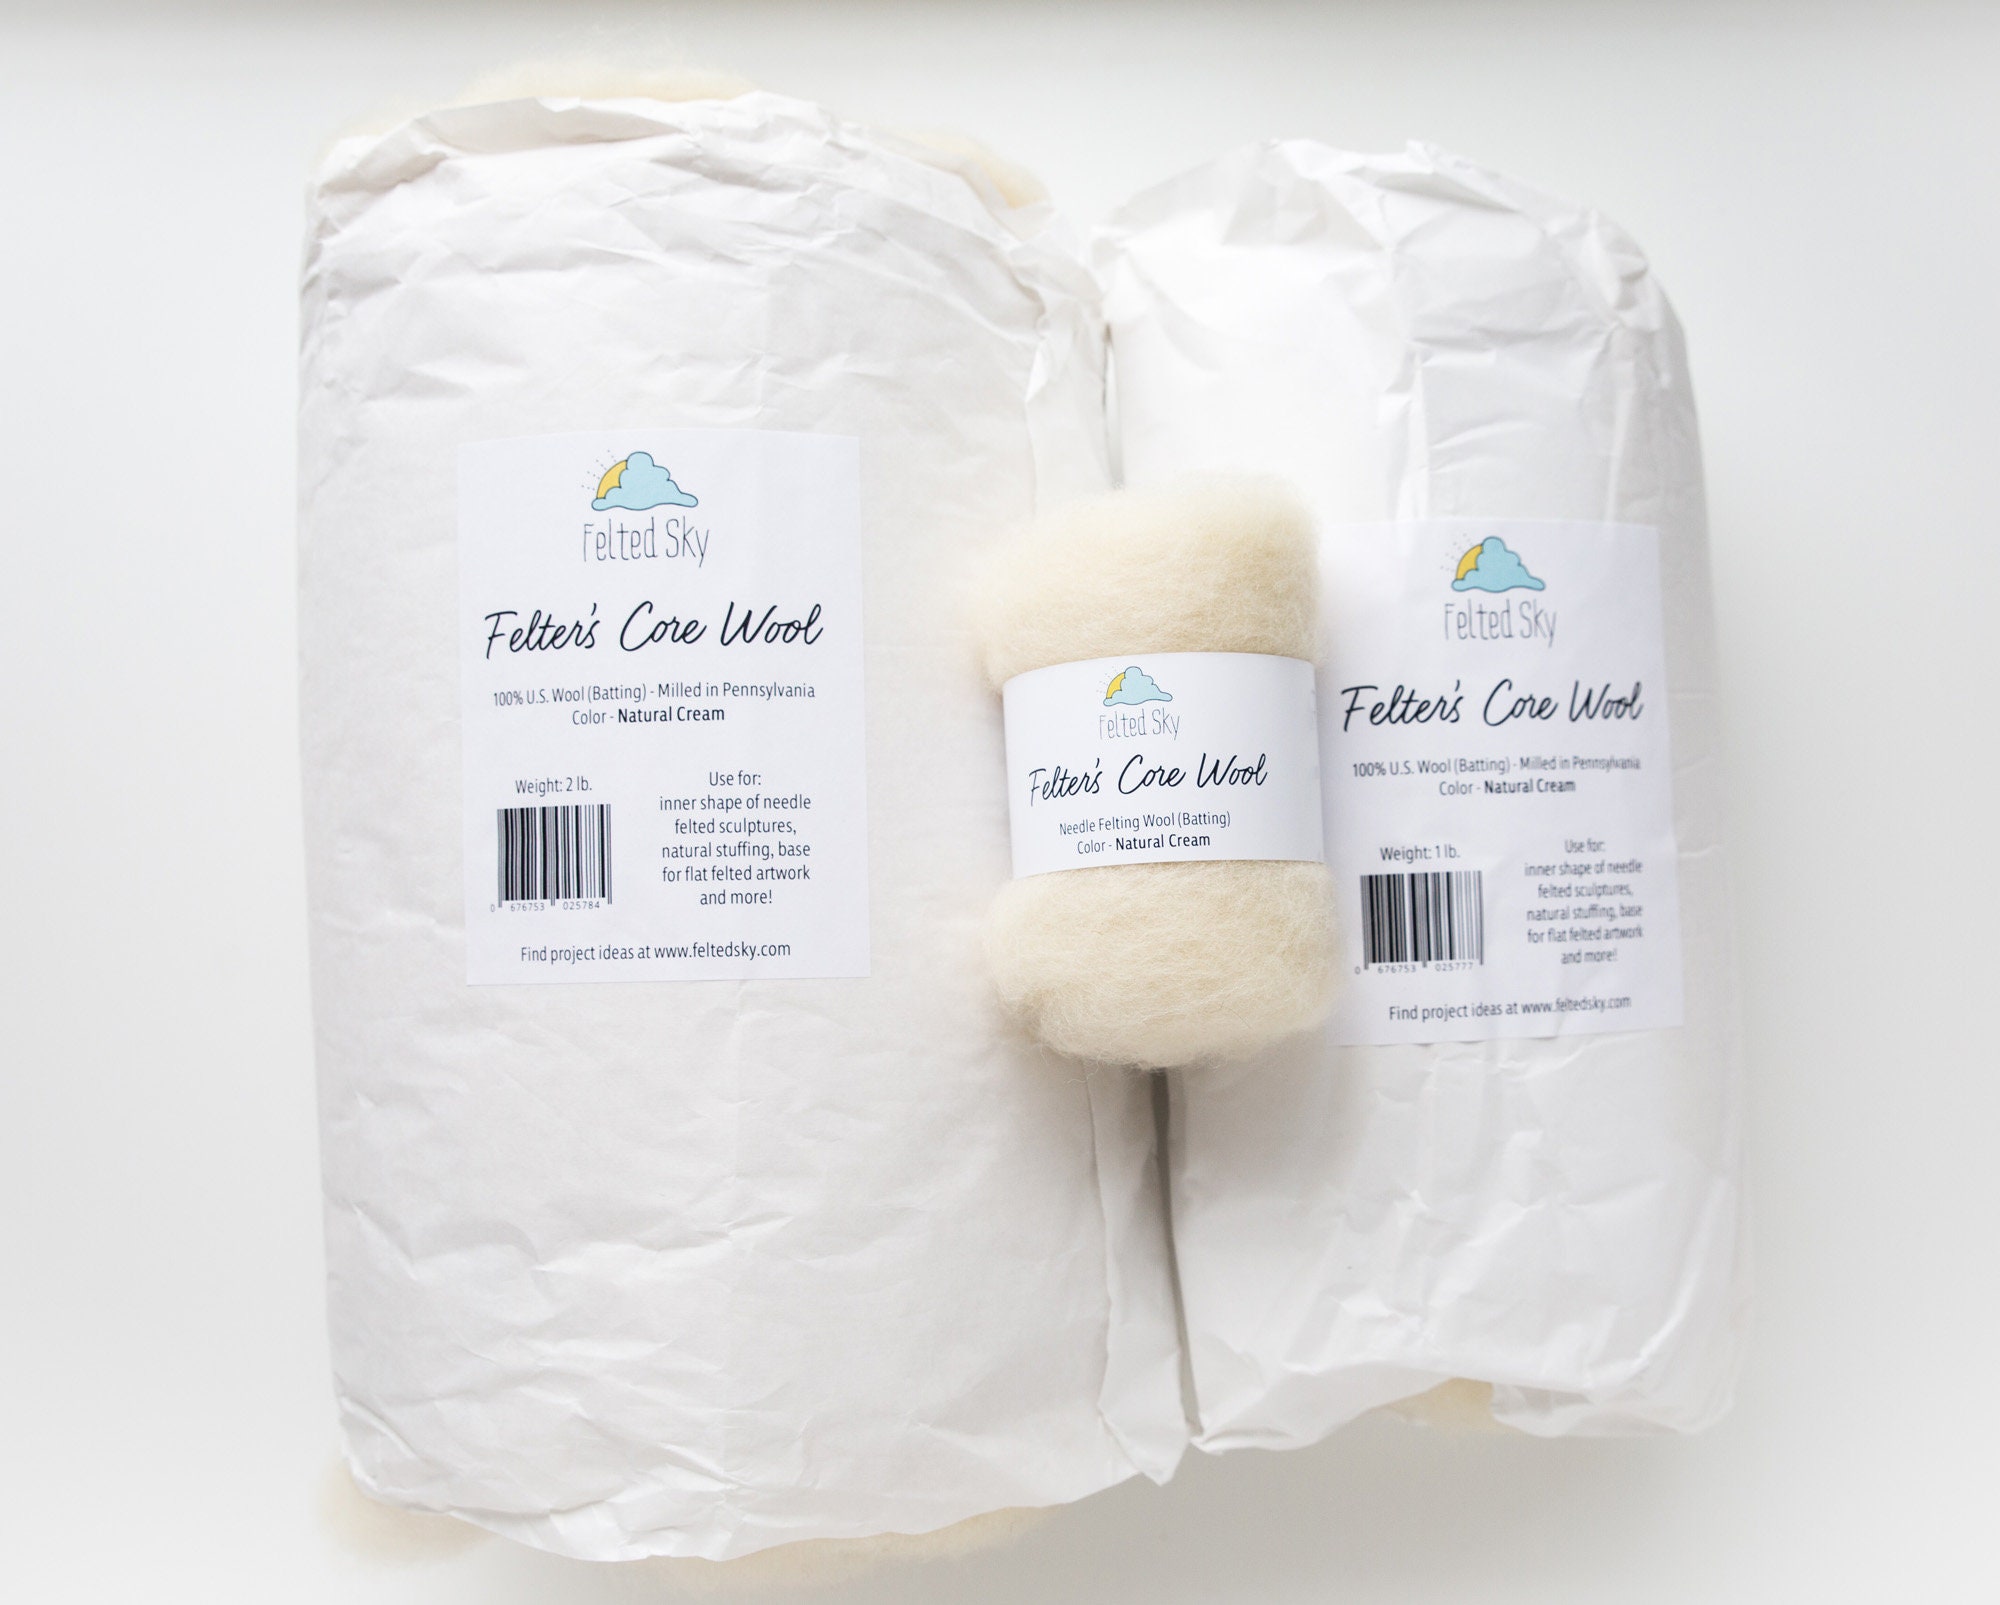 1 Oz. Core Wool Batting for Needle Felting, Wet Felting, or